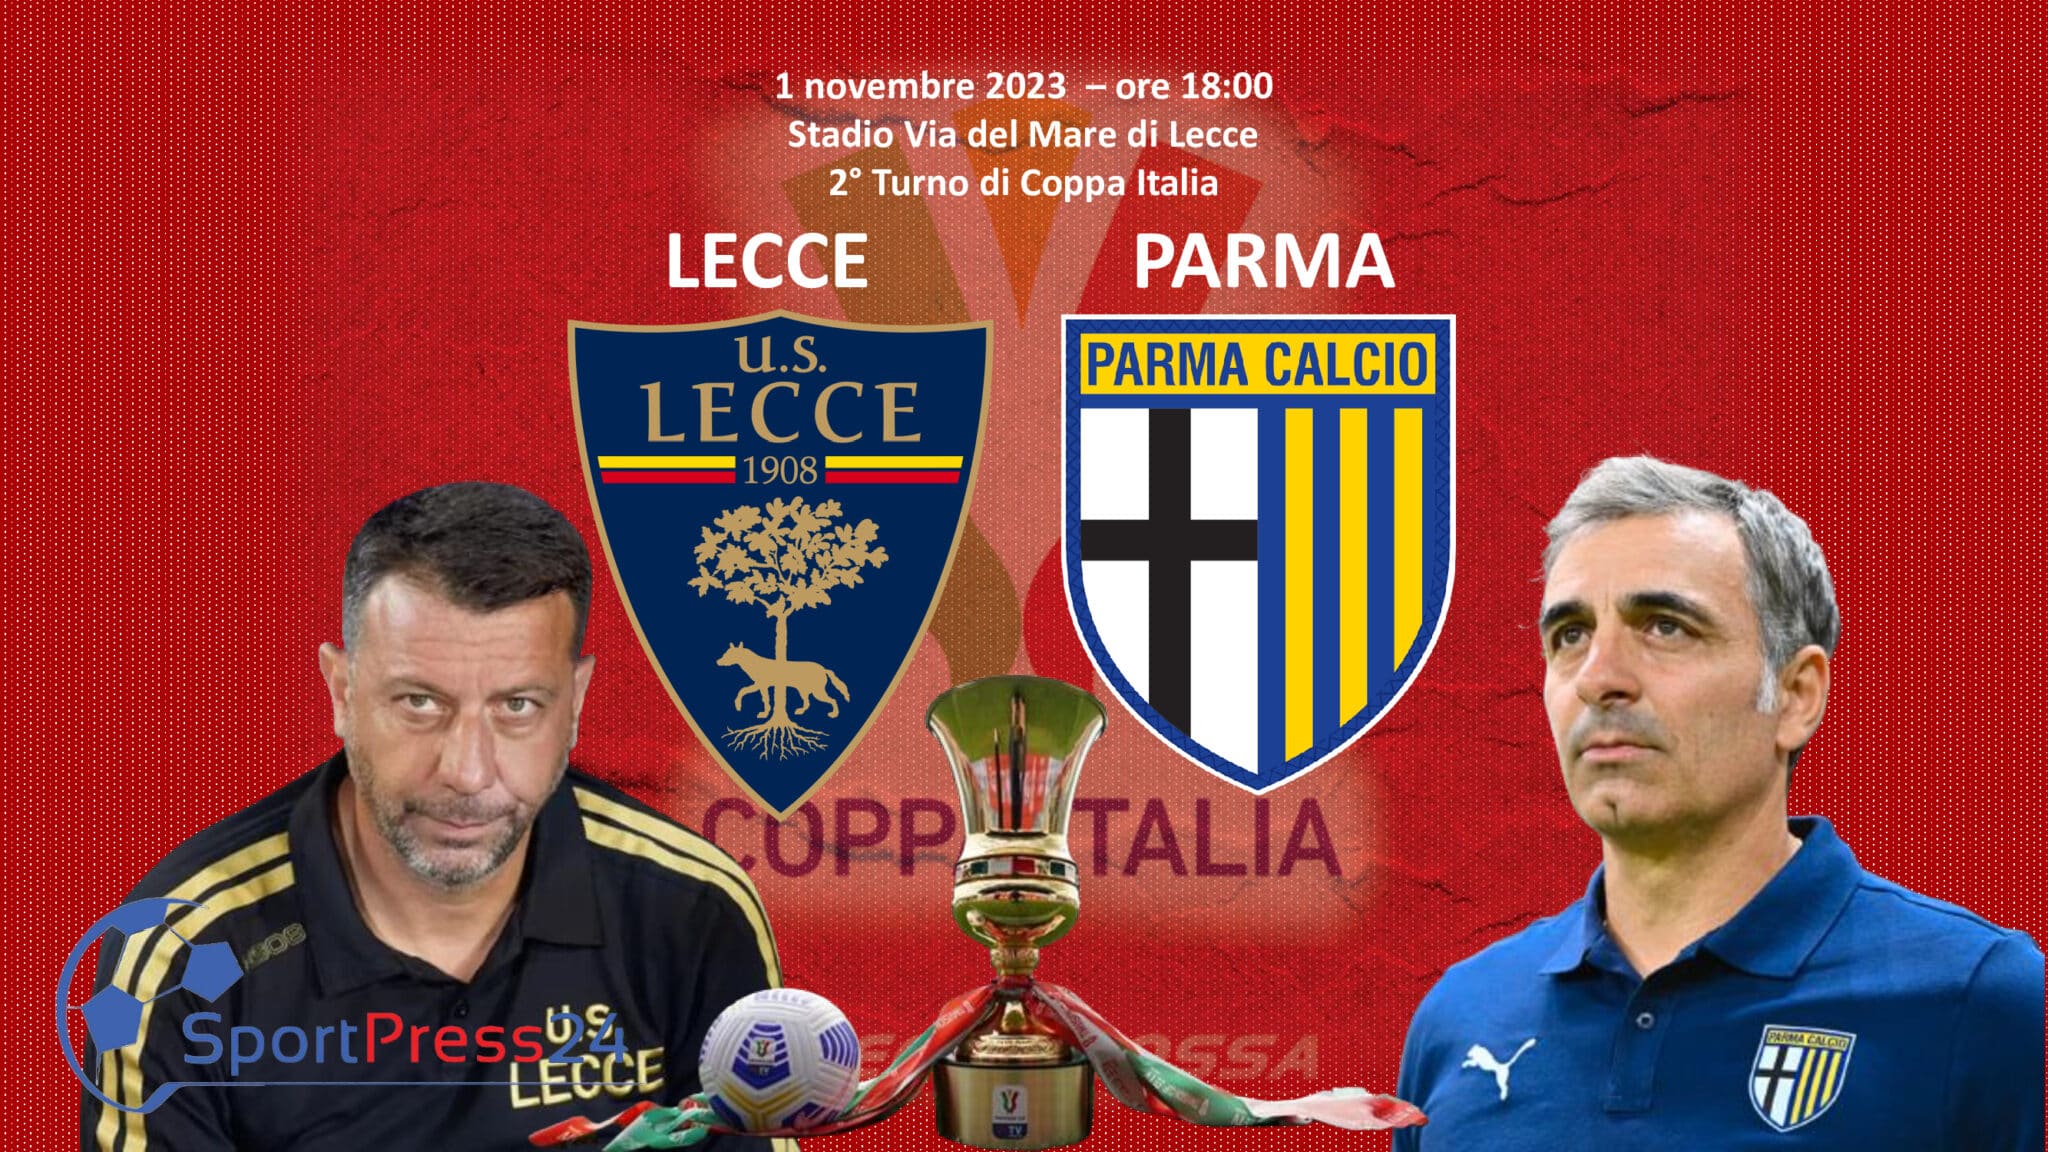 Lecce-Parma (Immagine a cura di Valerio Giuseppe Bellinghieri)